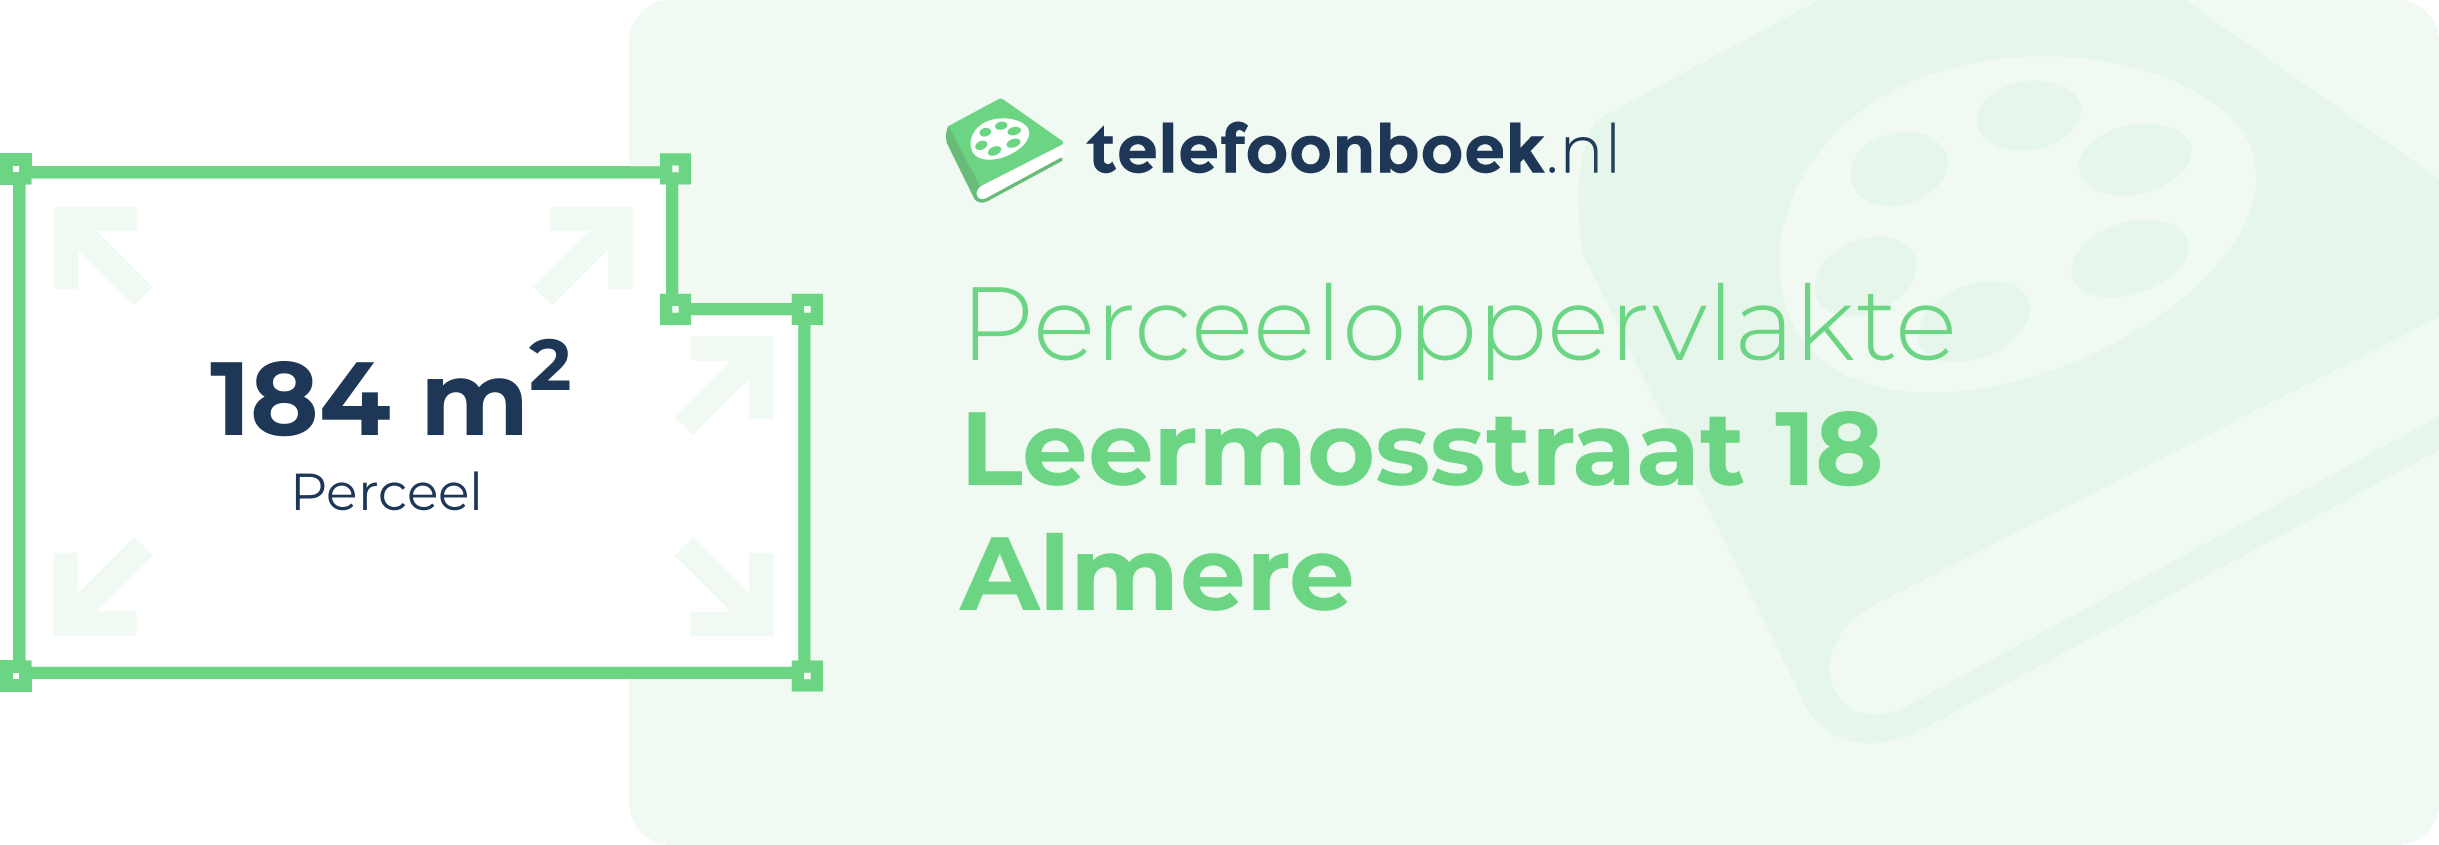 Perceeloppervlakte Leermosstraat 18 Almere